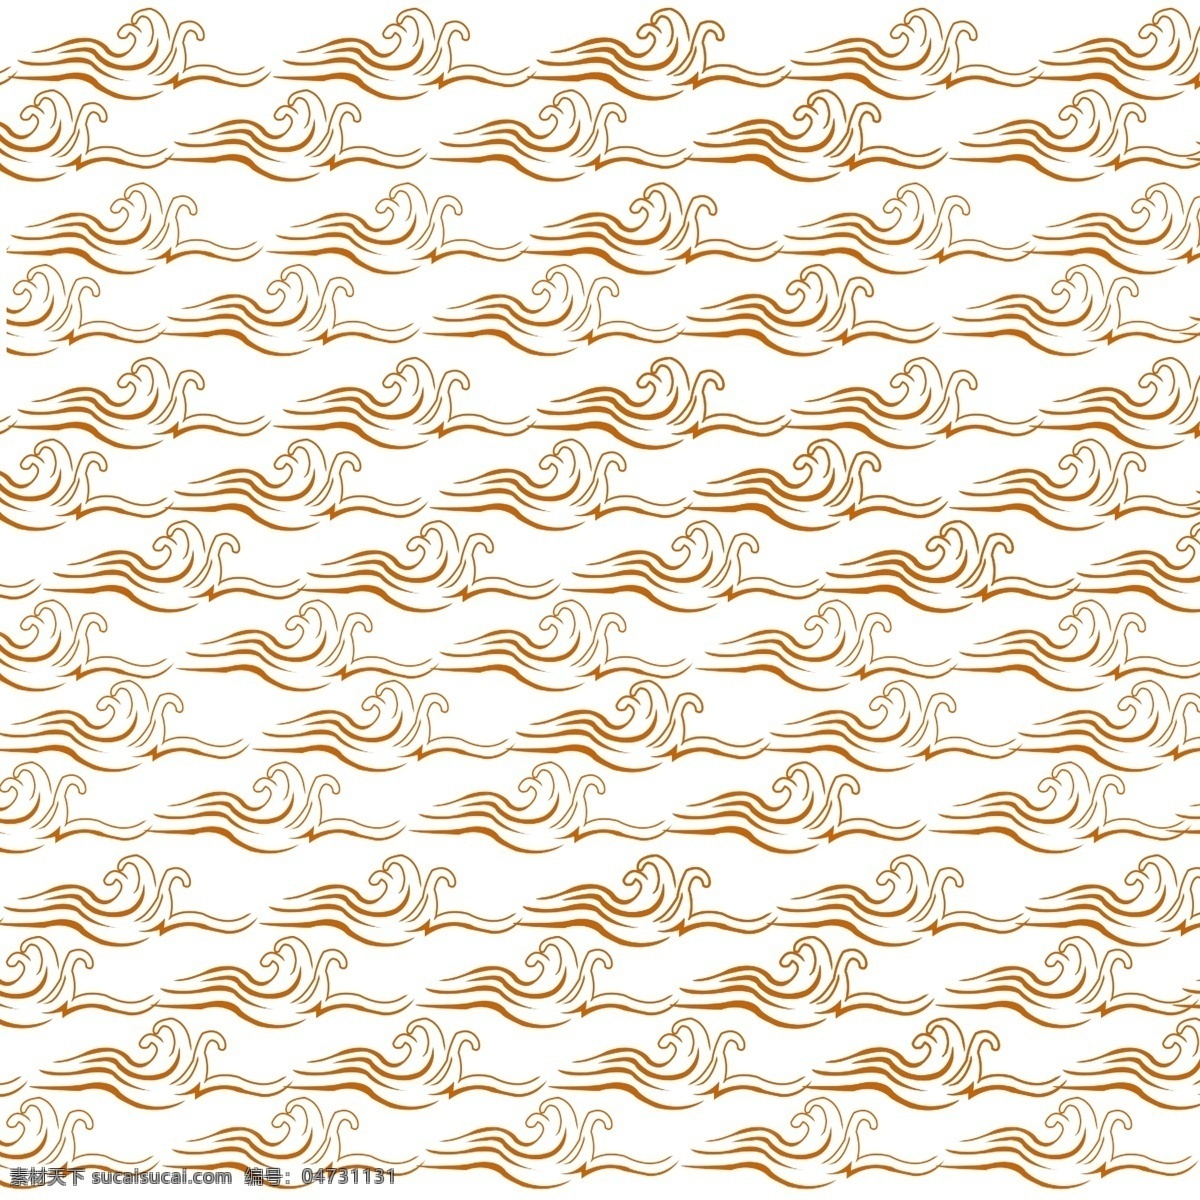 金色 海浪 纹 中国 传统 纹理 底纹 中国风 浪纹